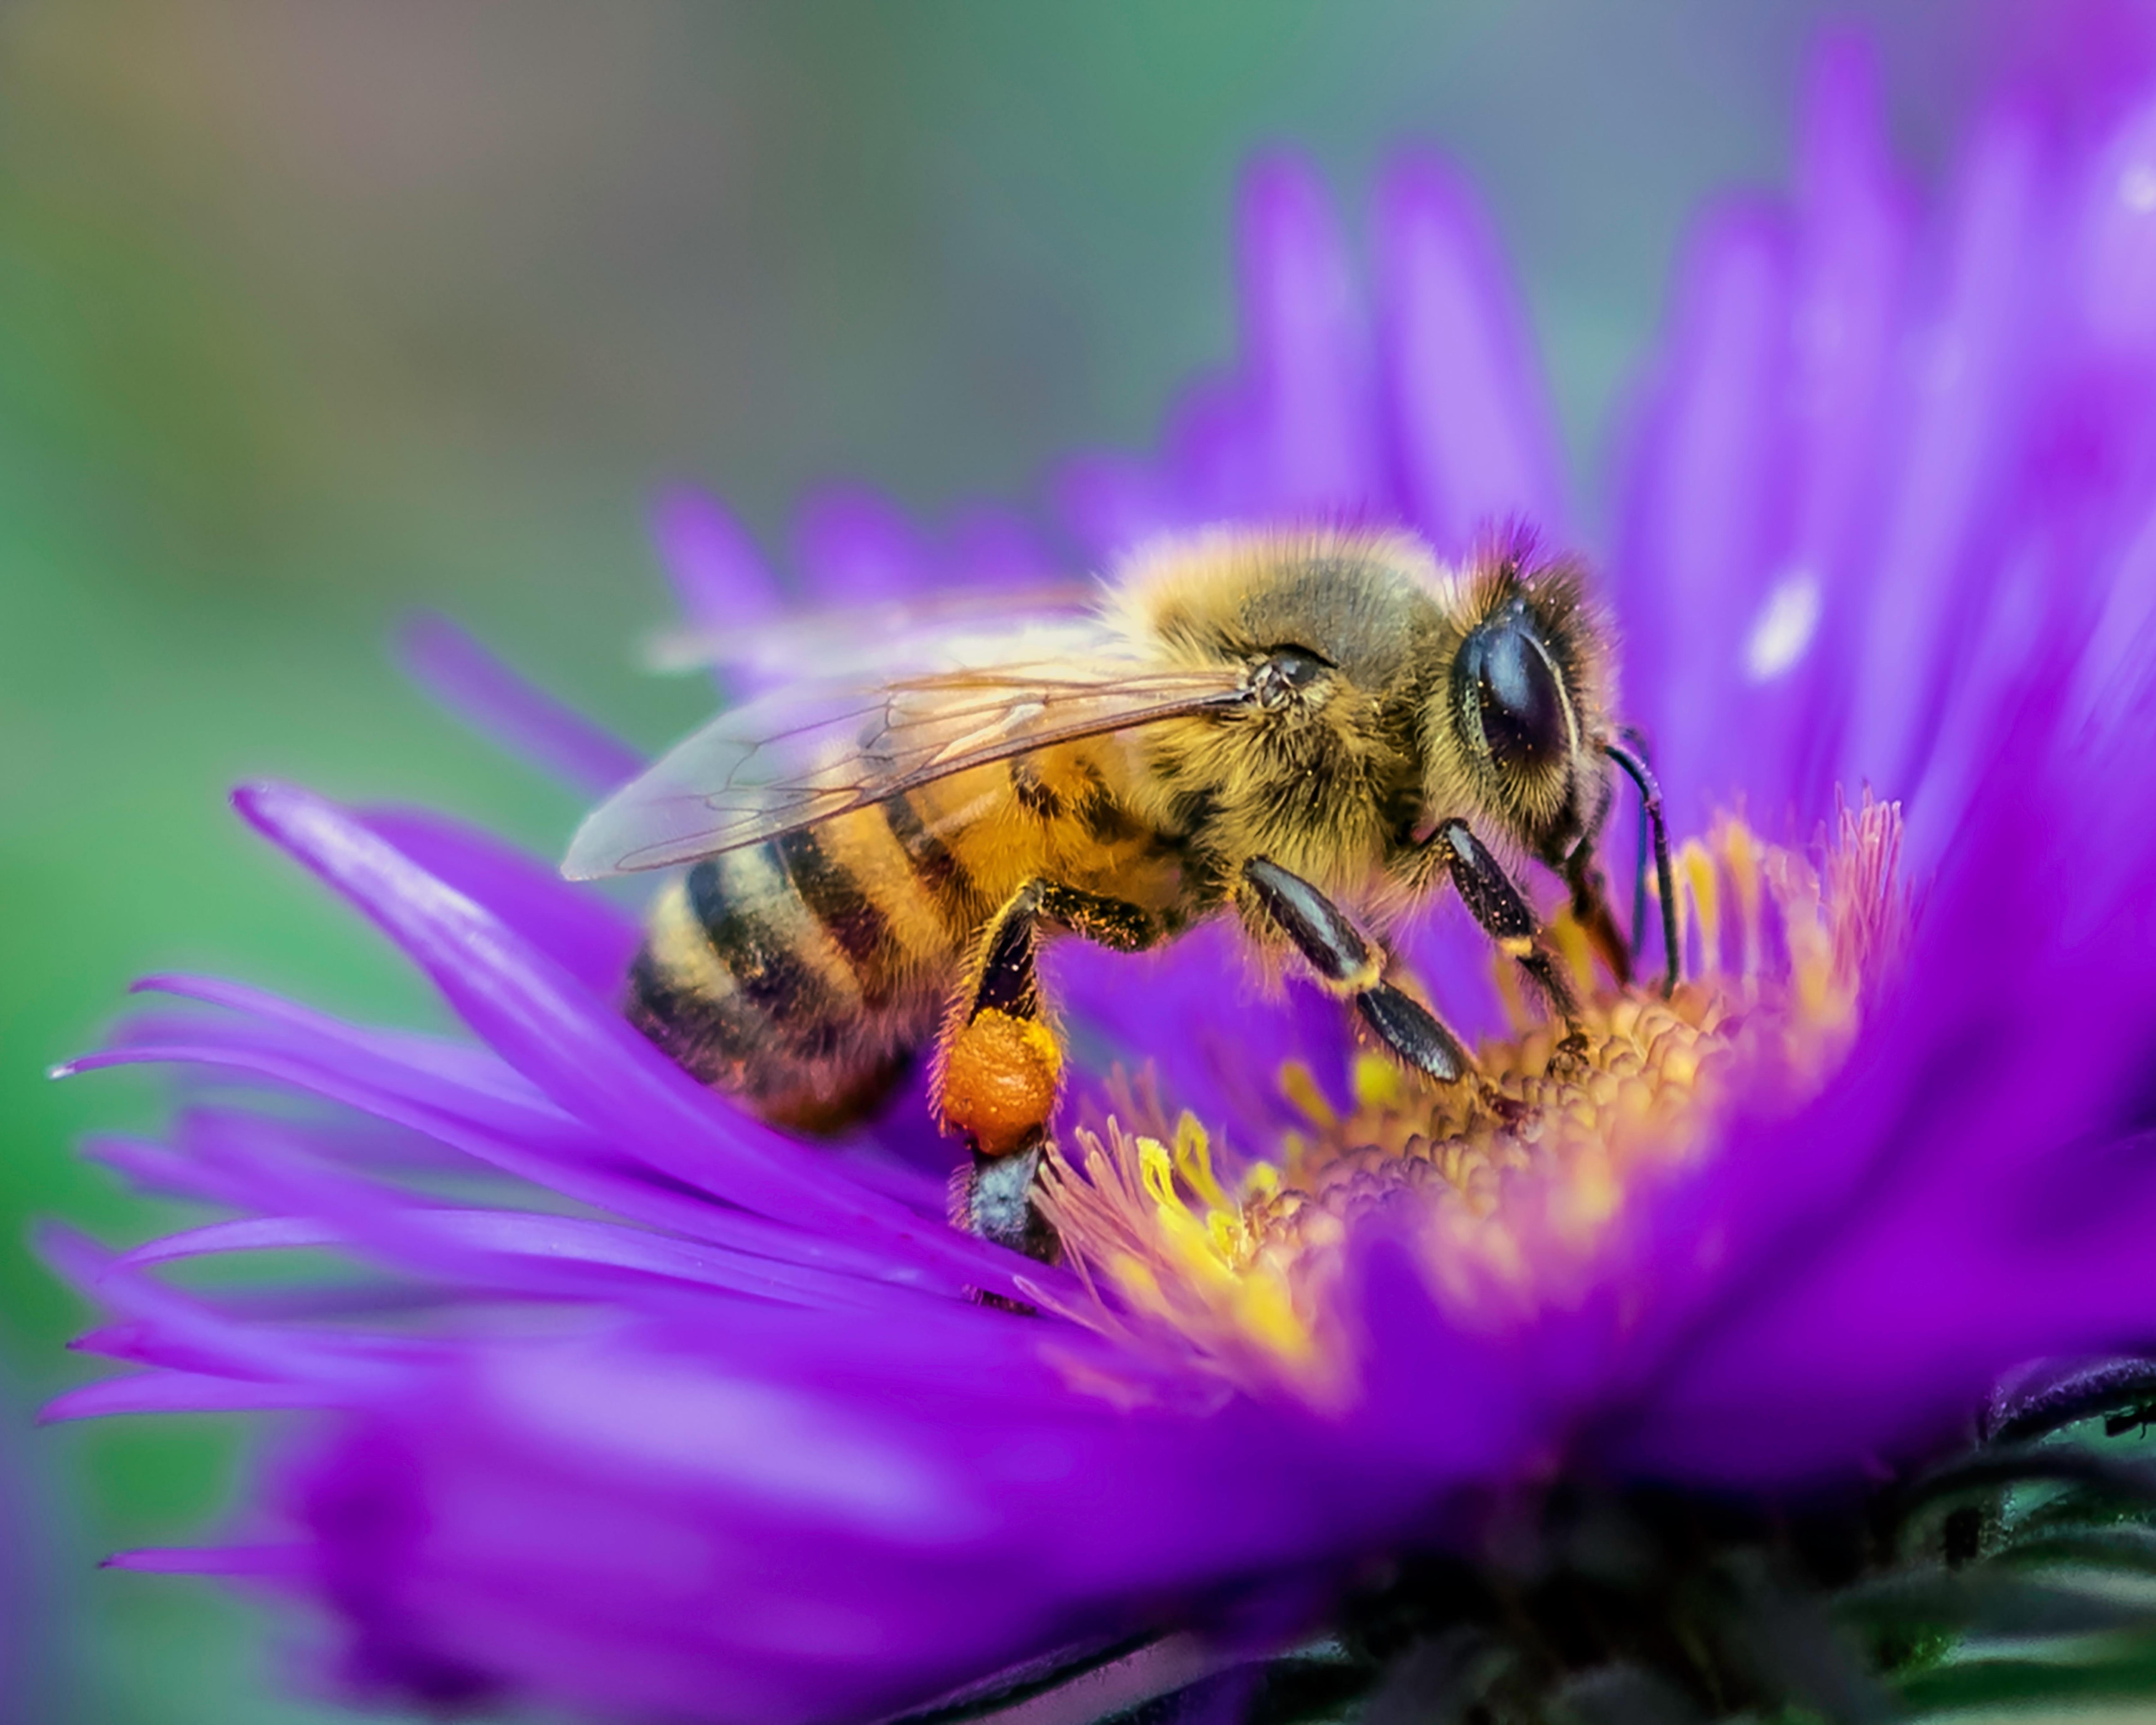 Kvôli včelám: Kupujte bio kozmetiku bez pesticídov